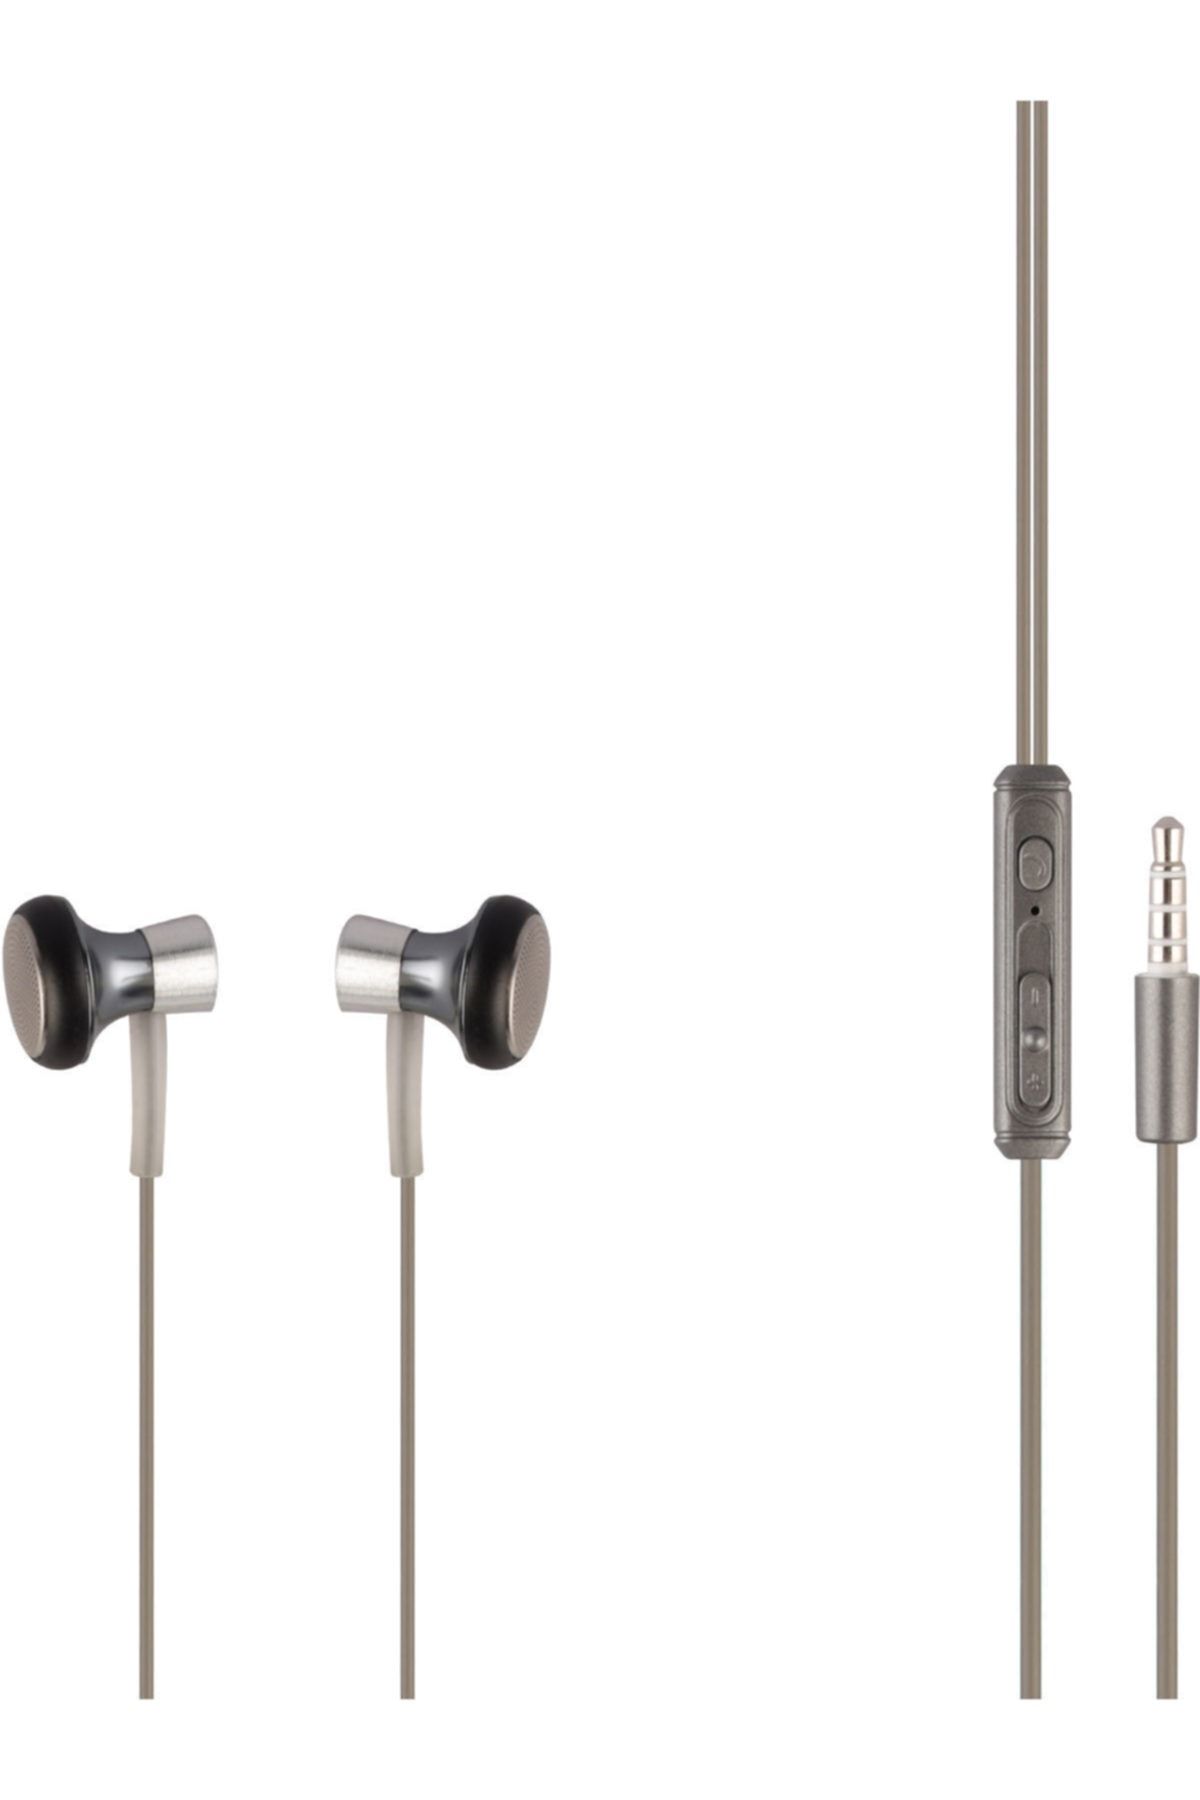 MF PRODUCT 0153 Mikrofonlu Kablolu Kulak Içi Kulaklık Gümüş